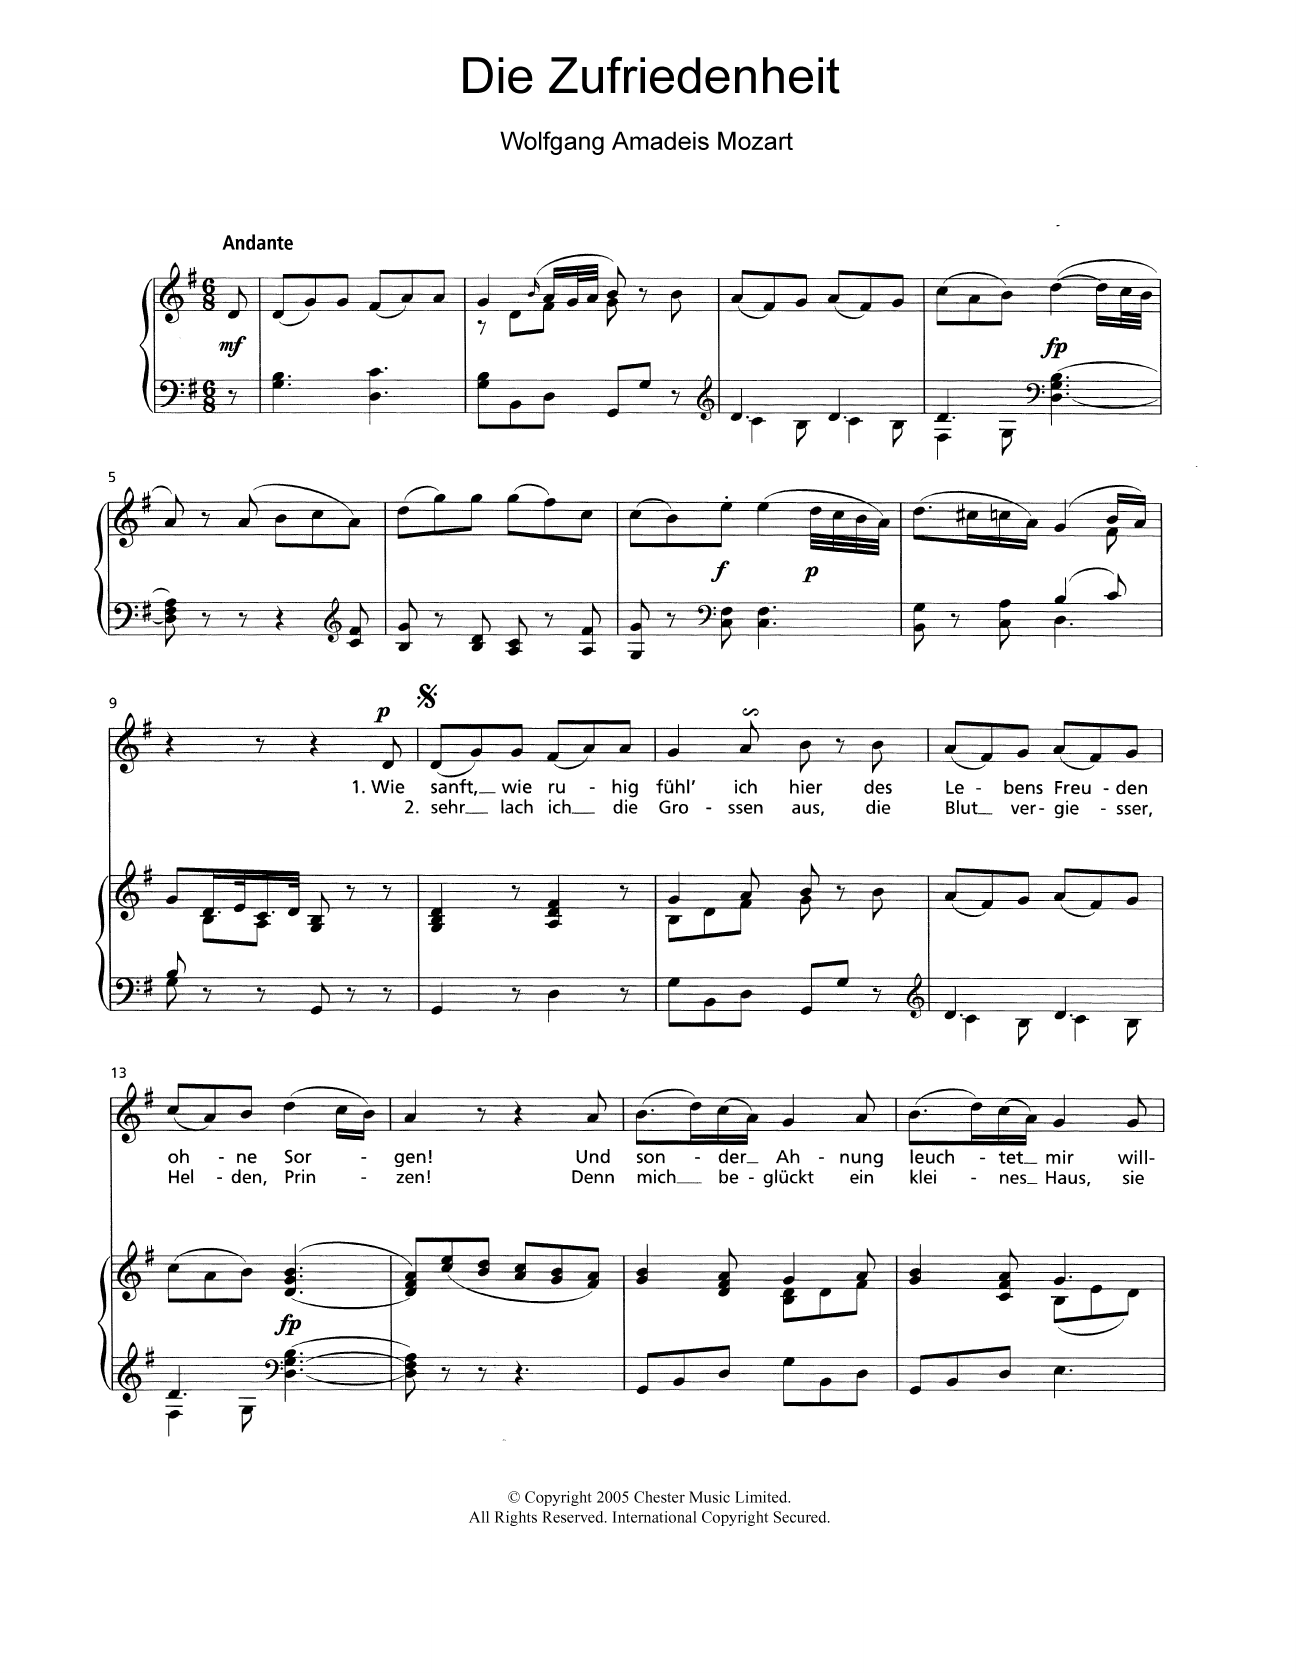 Download Wolfgang Amadeus Mozart Die Zufriedenheit K.473 Sheet Music